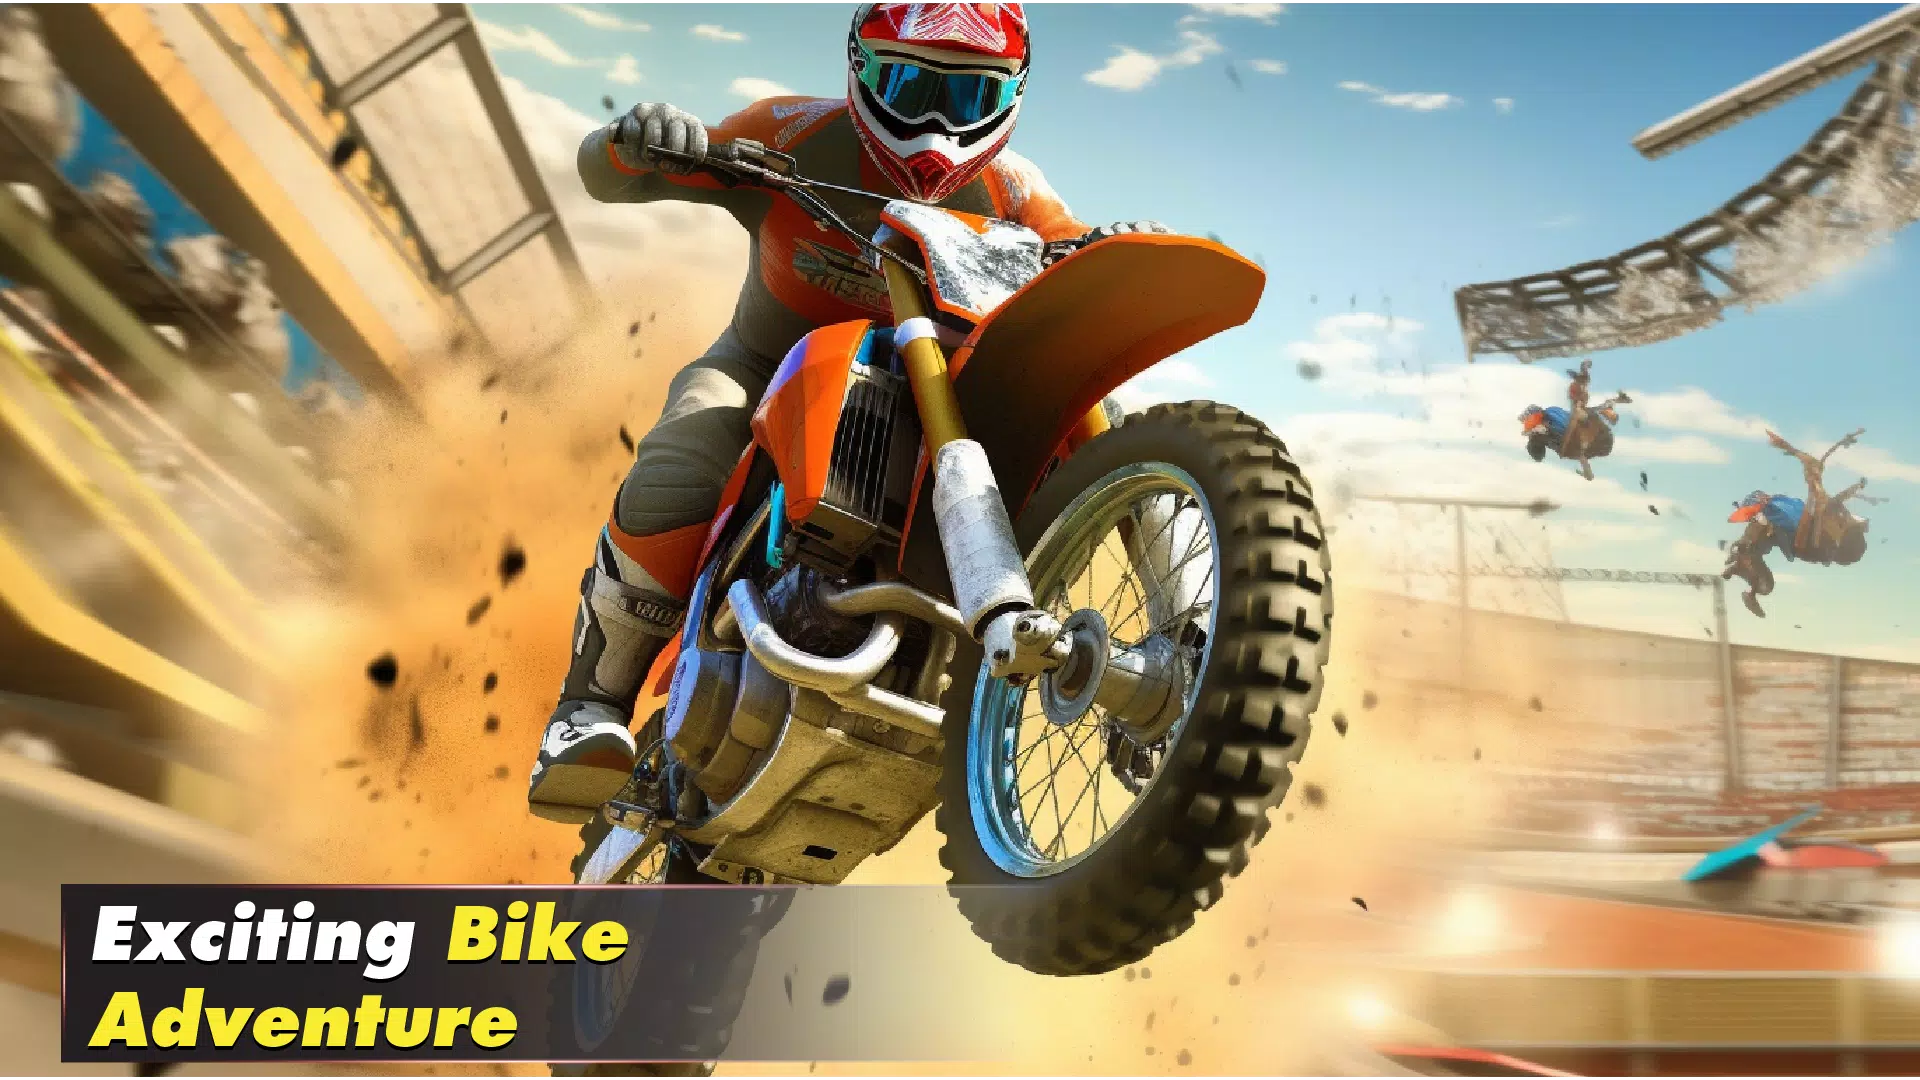 Download do APK de jogo de moto - vr jogos 3d para Android